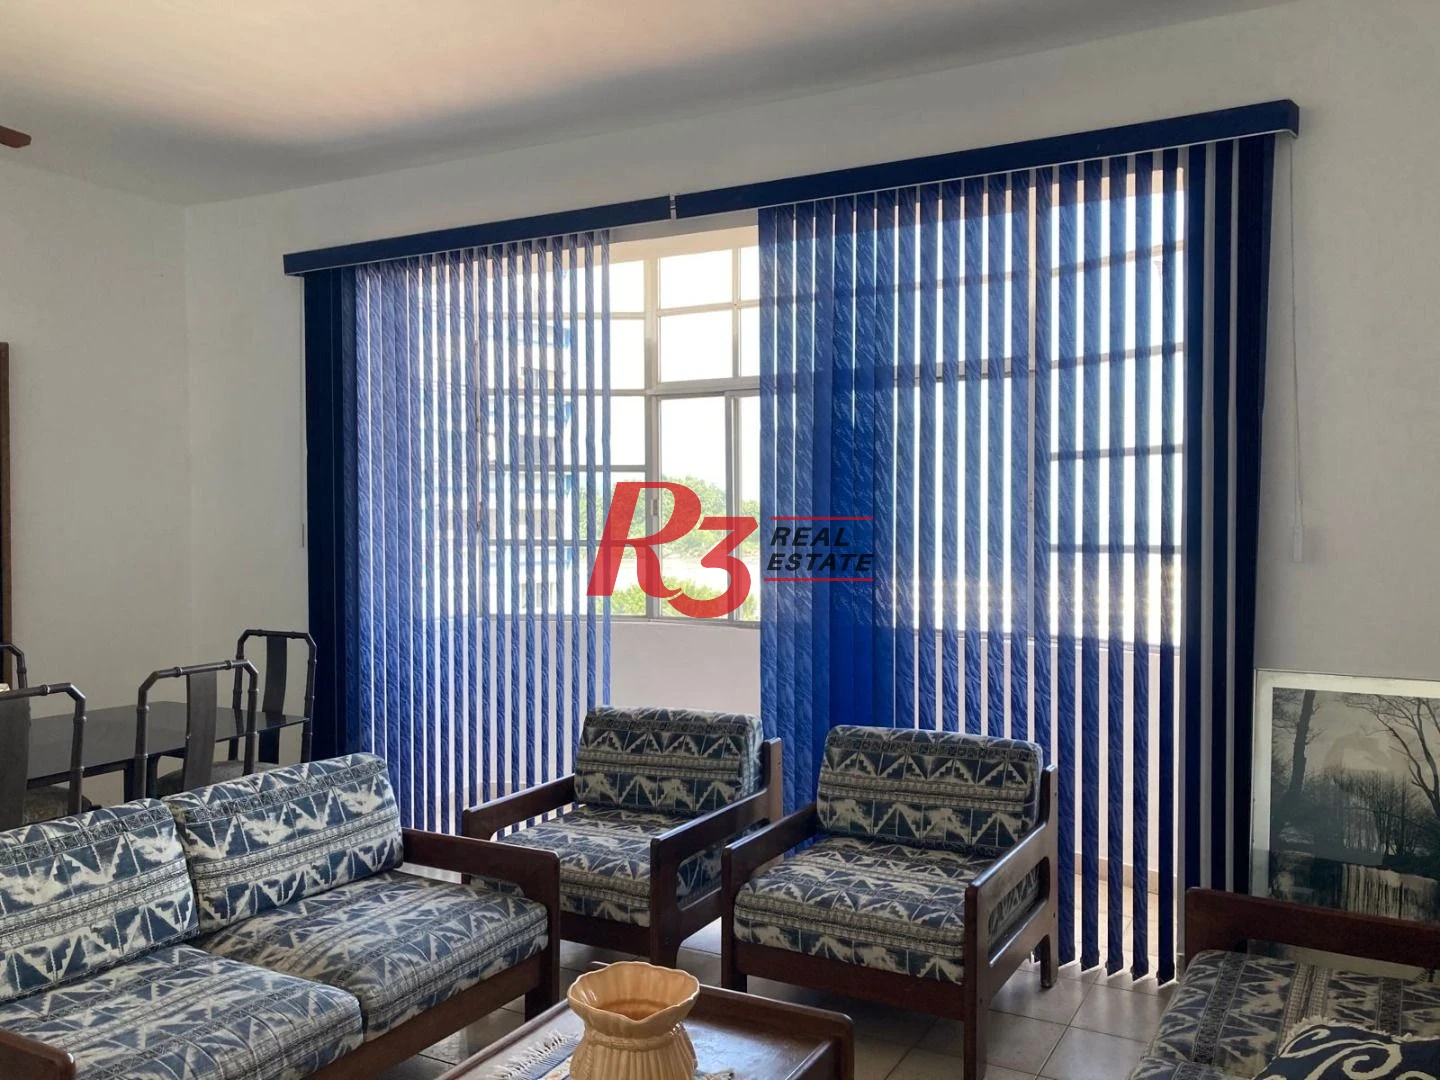 Apartamento com 3 dormitórios à venda, 110 m² por R$ 425.000,00 - Itararé - São Vicente/SP